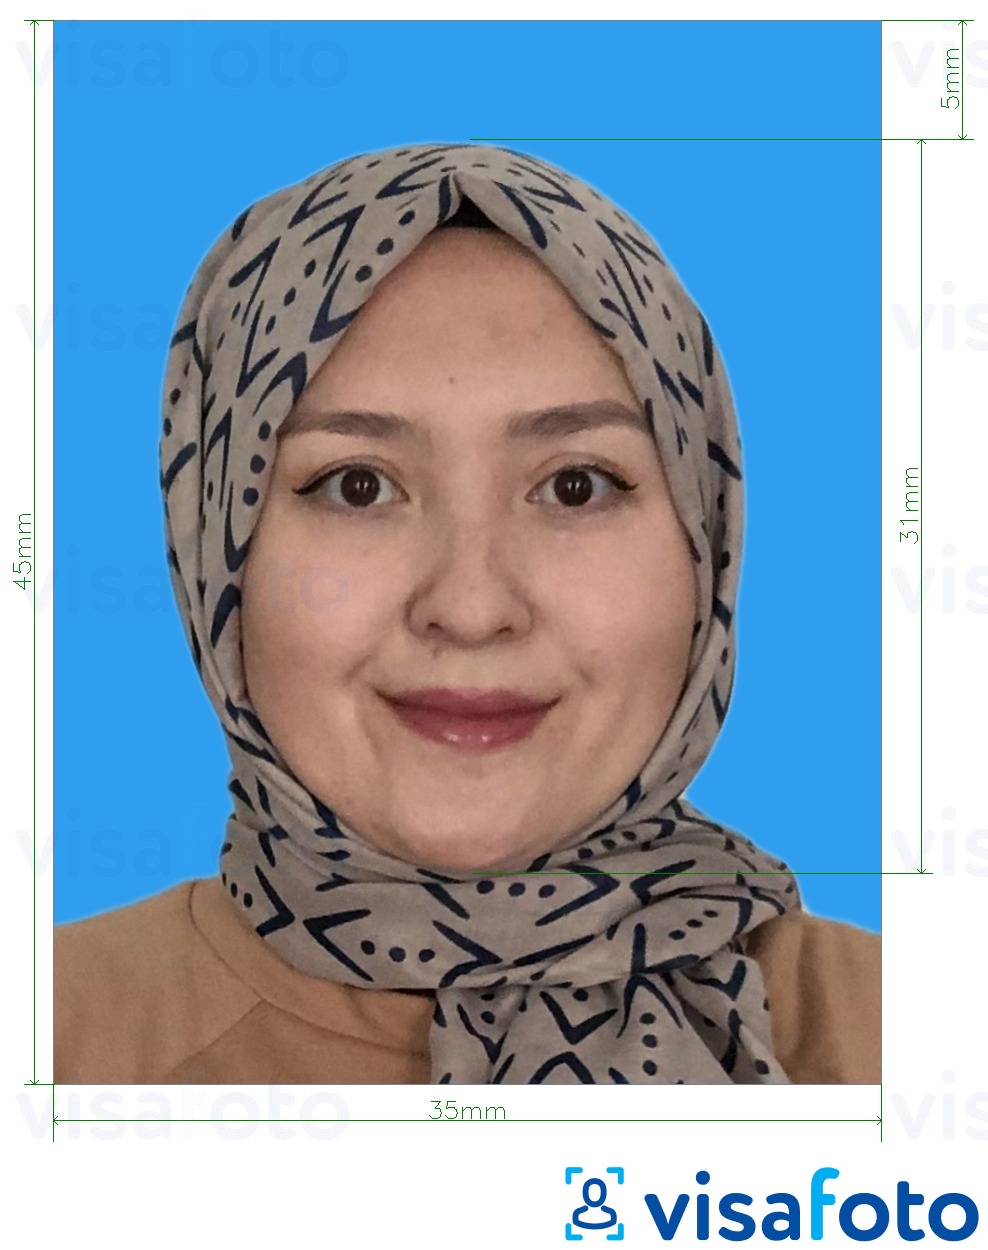  Malaisia ​​Visa 35x45 mm sinine taust fotonäidis koos täpse infoga mõõtude kohta.